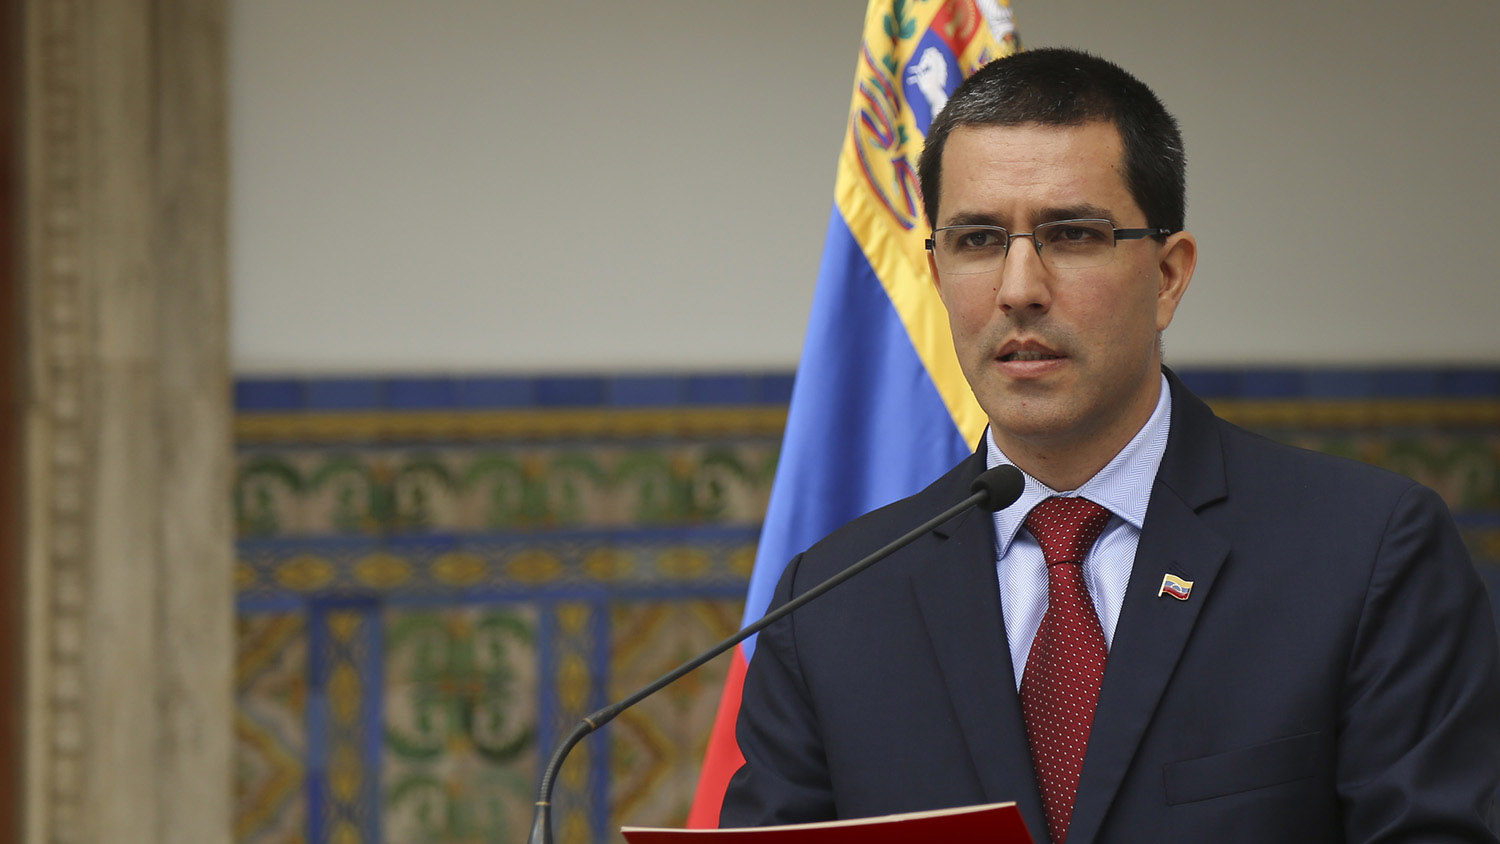 Jorge Arreaza y ministro cubano, Rodrigo Malmirca Díaz, presiden la reunión de Cooperación Cuba-Venezuela